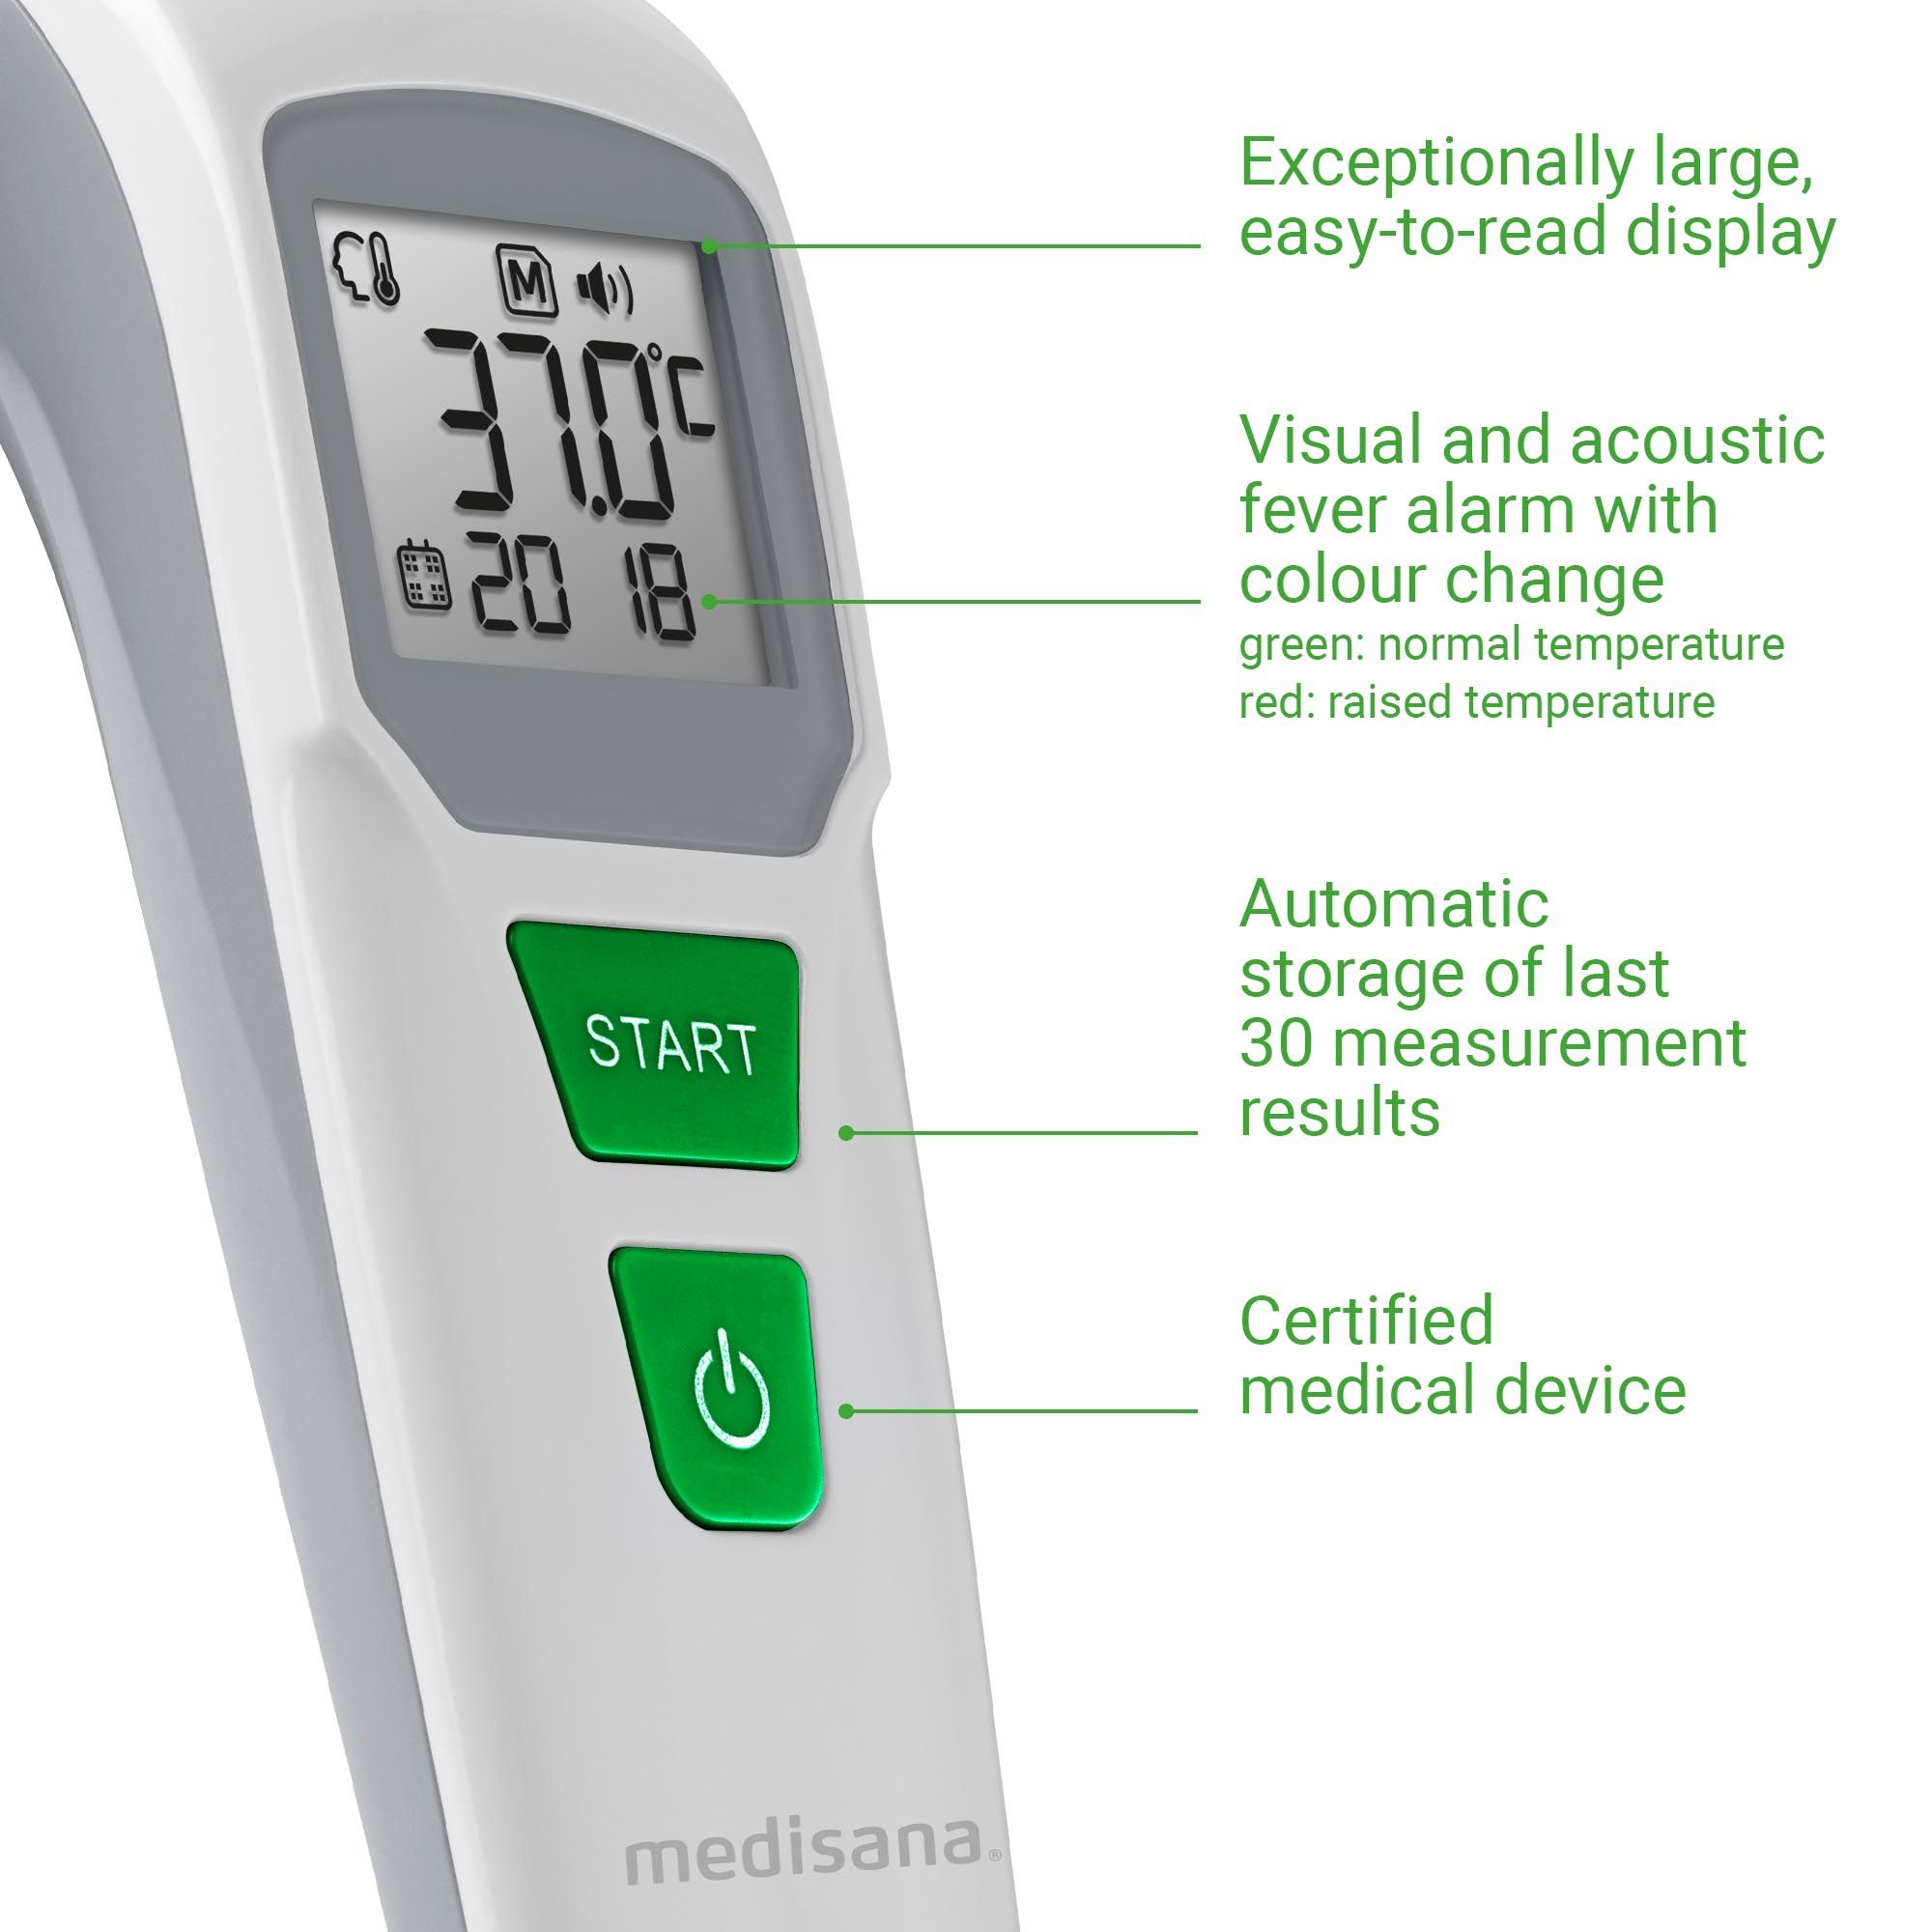 medisana TM 760 digitales Stirnthermometer für Babys, Kinder & Erwachsene mit visuellem Fieberalarm